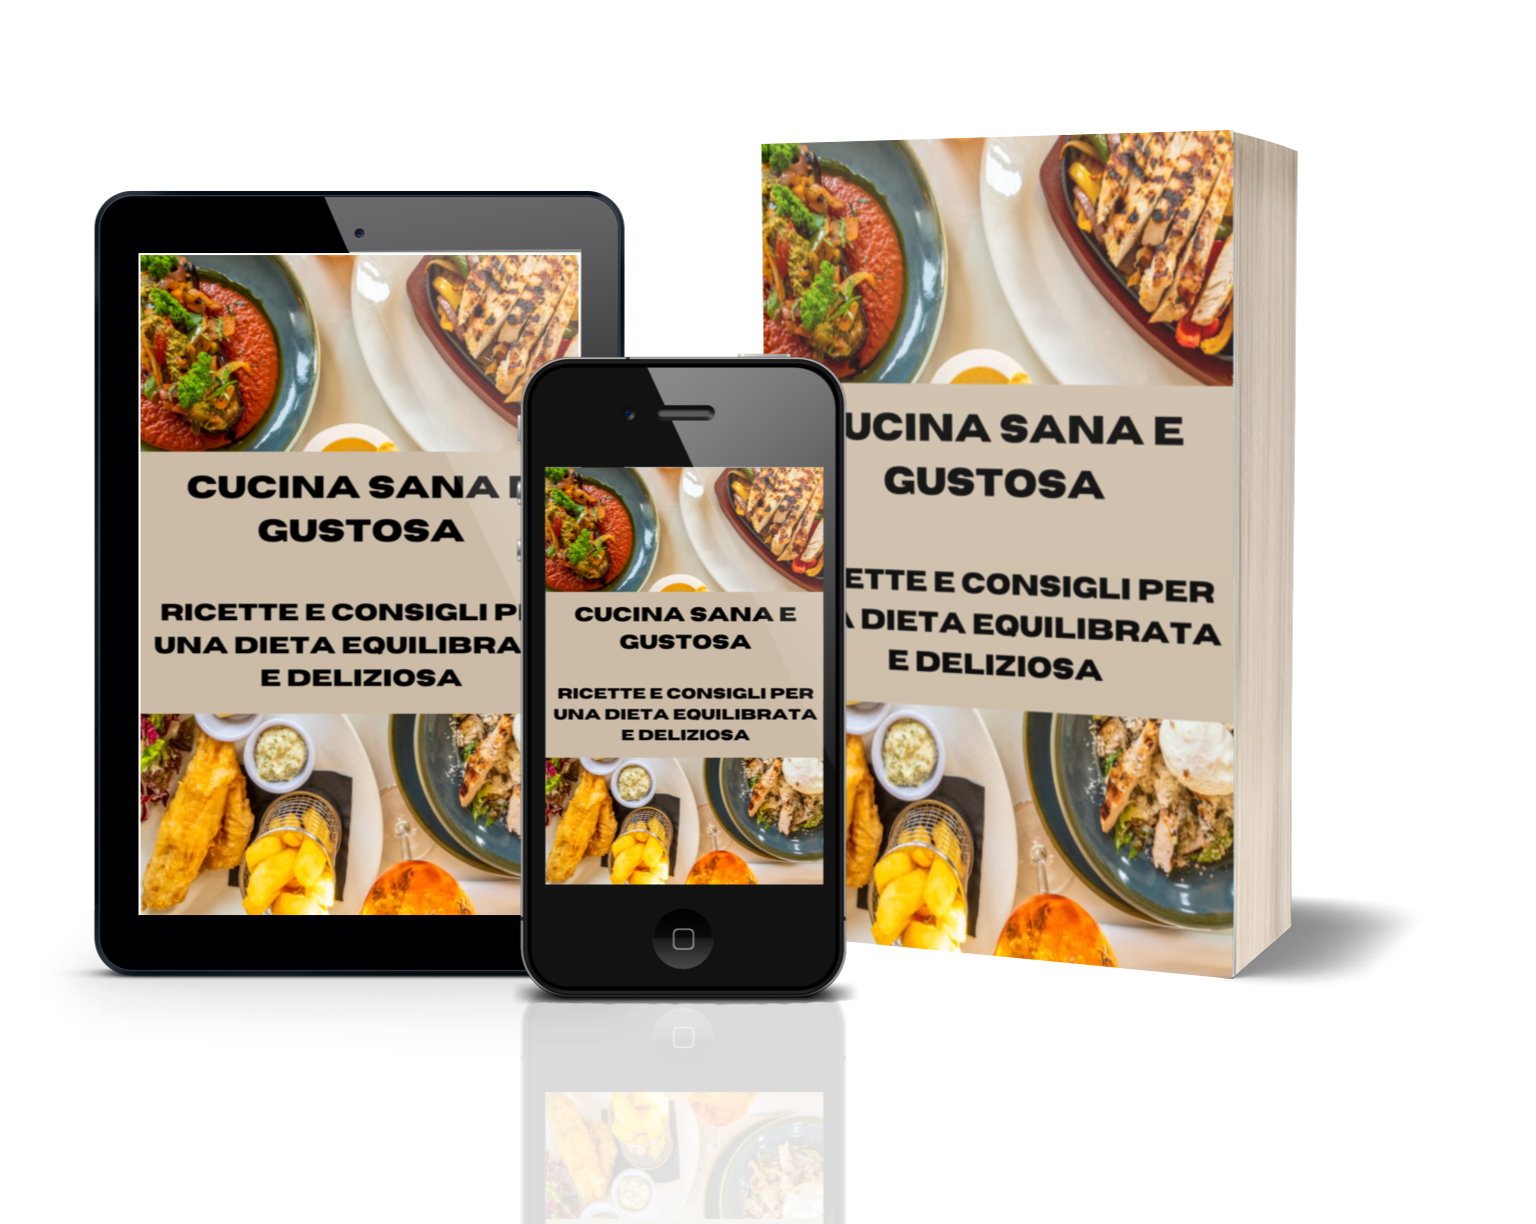 Cucina Sana e Gustosa: Ricette e Consigli per una Dieta Equilibrata e Deliziosa